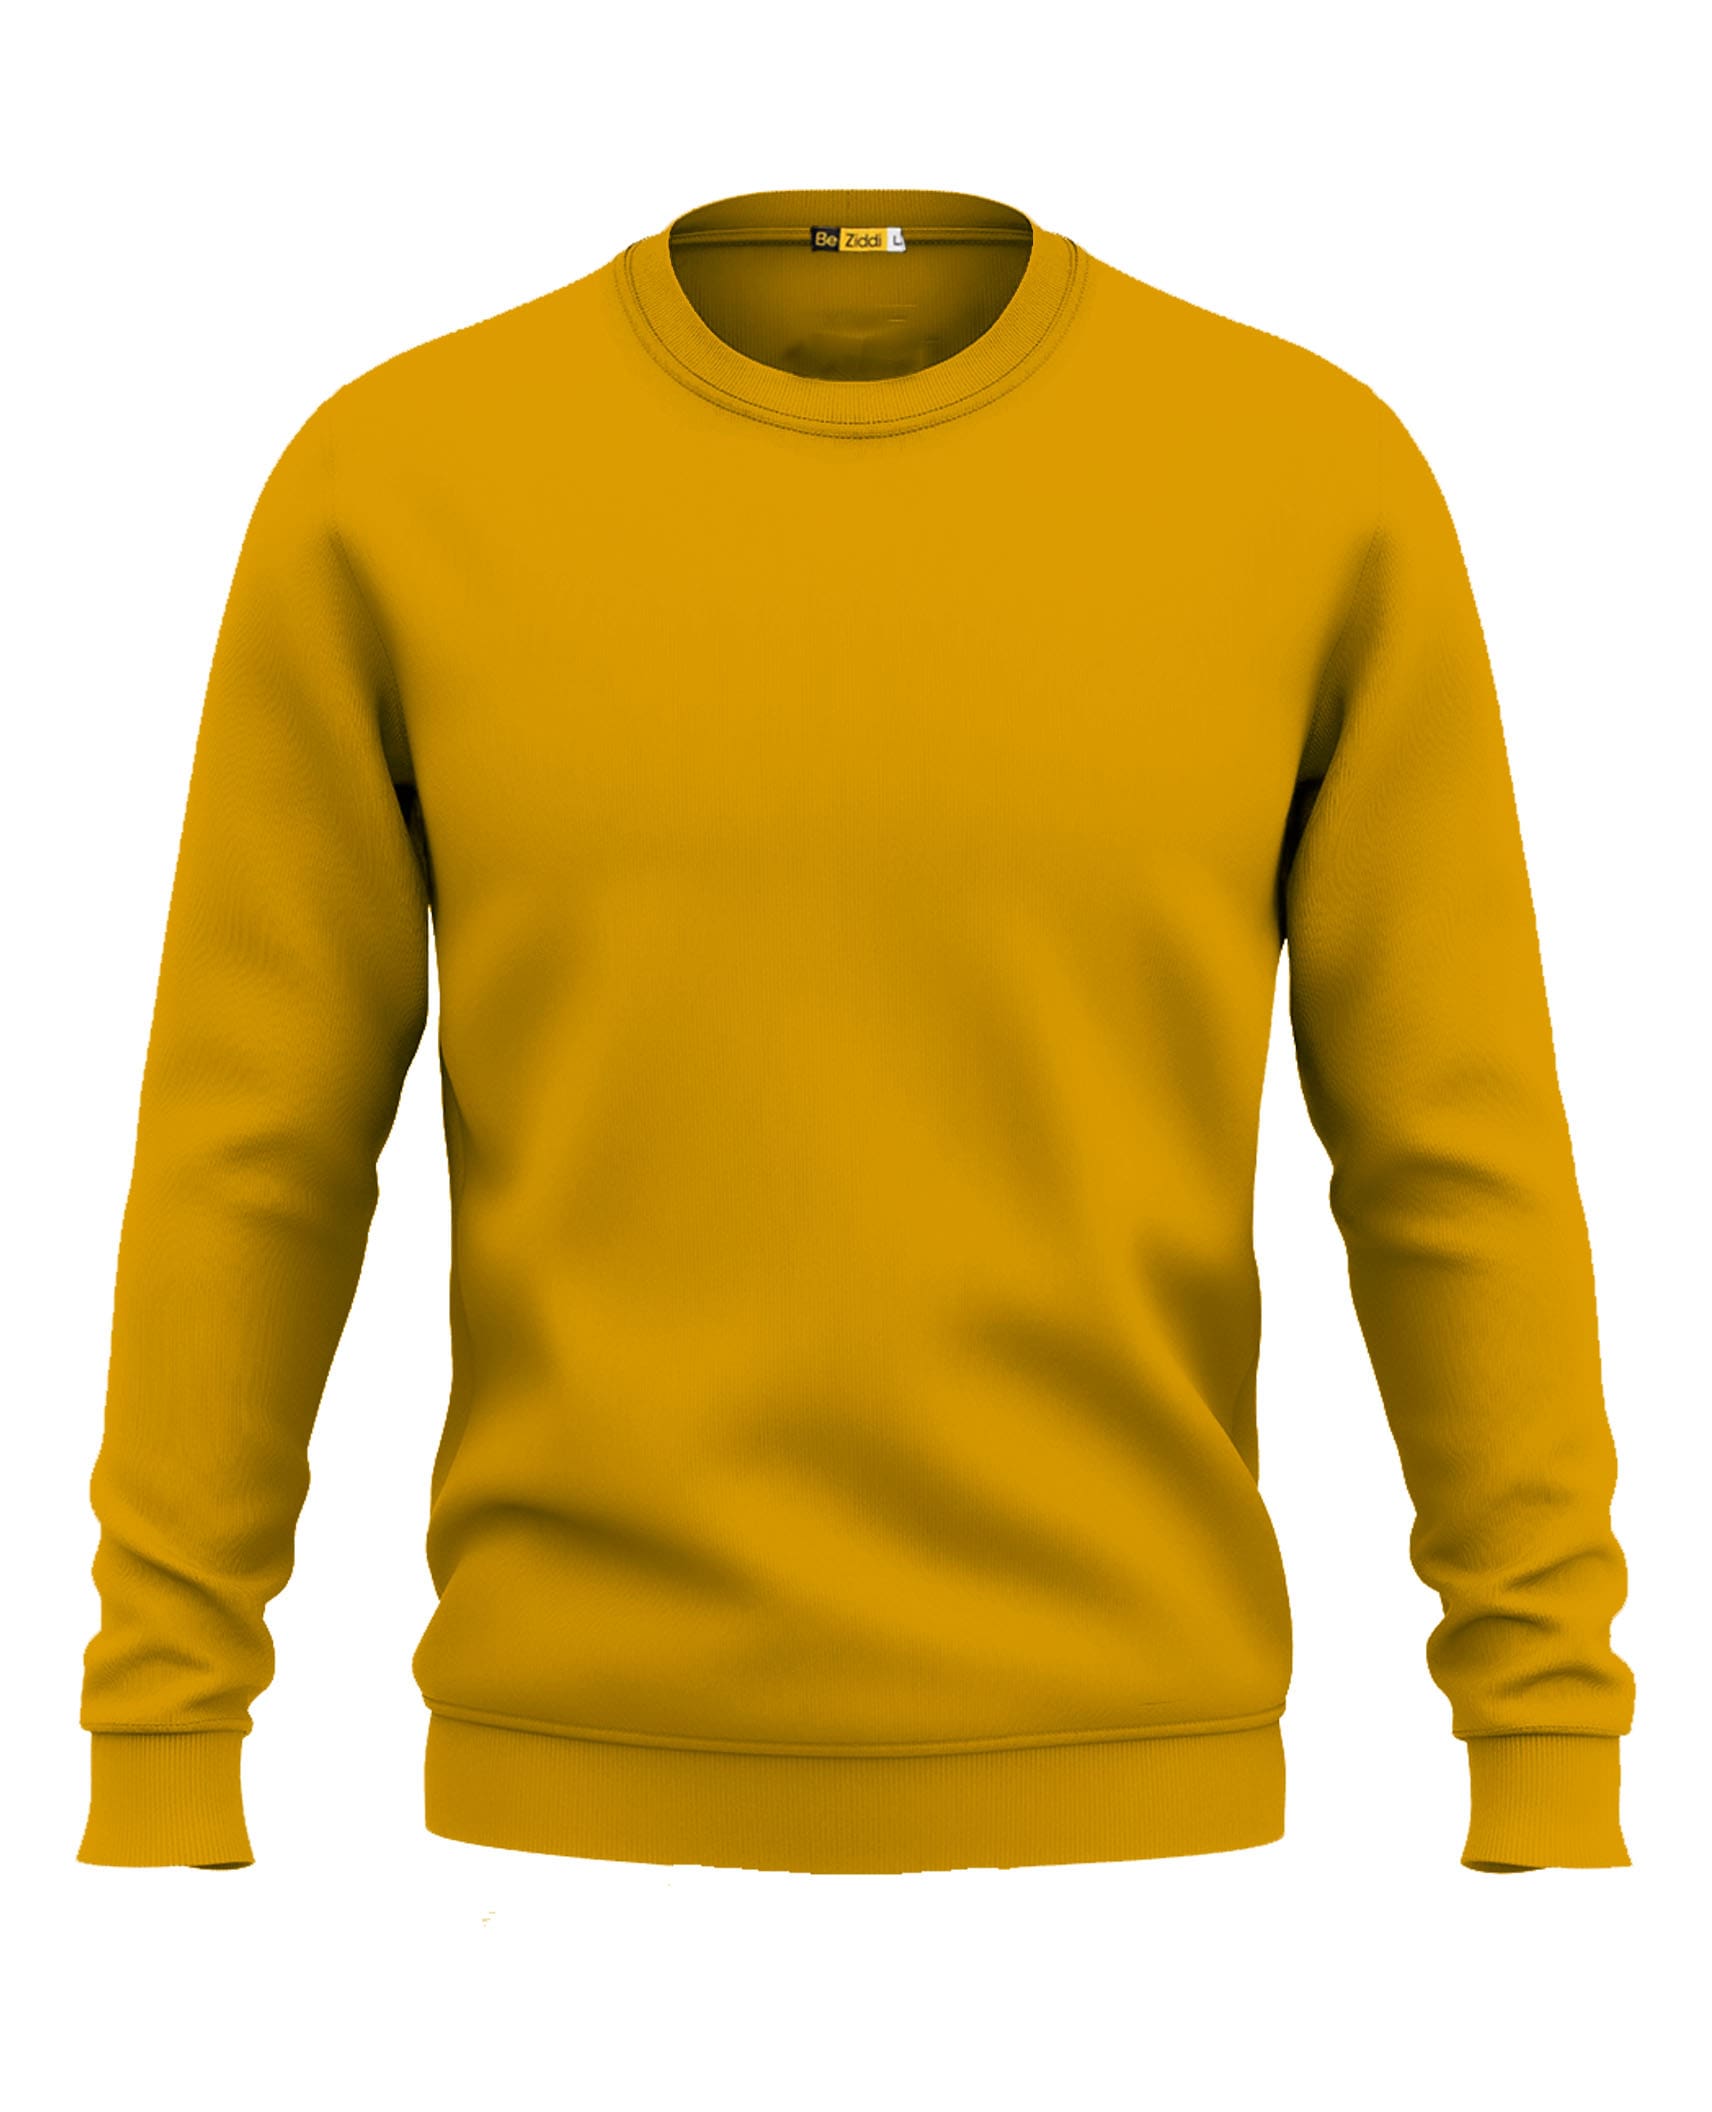 Buy Solids: Mustard Yellow Sweatshirt Online